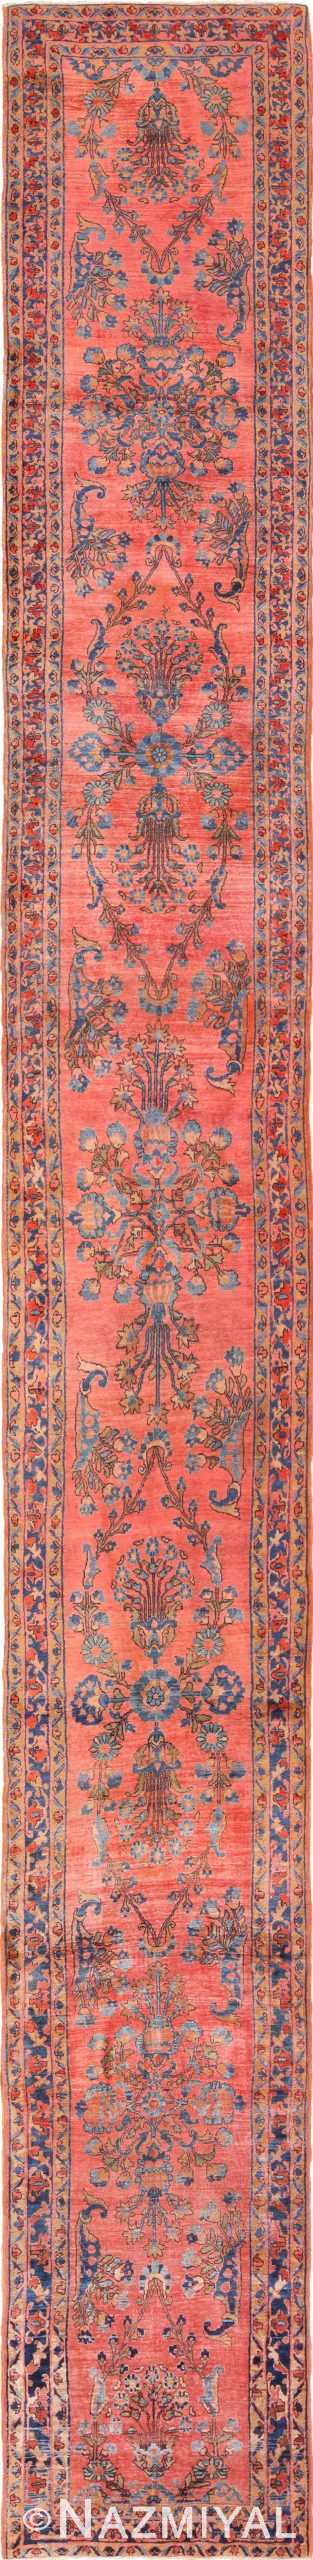 Long and Narrow Antique Persian Sarouk Runner Rug 49668 - Nazmiyal